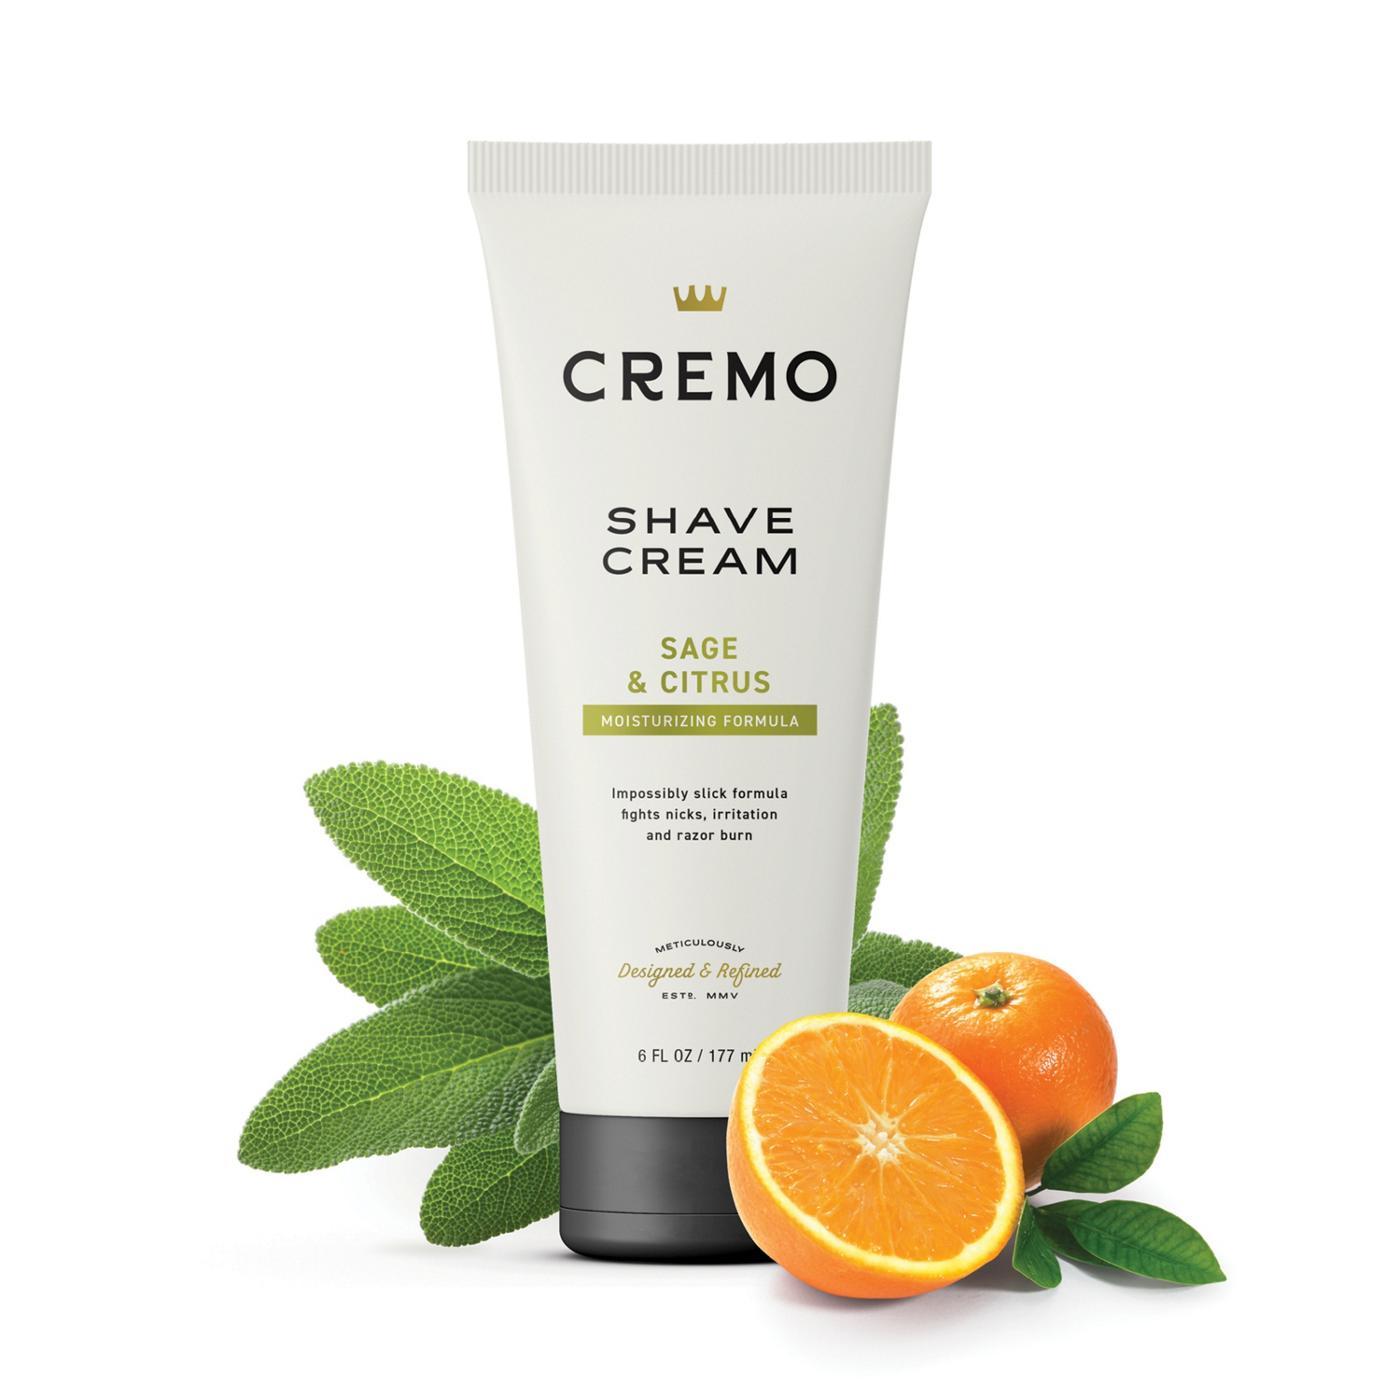 Cremo Shave Cream - Sage & Cistrus; image 4 of 6